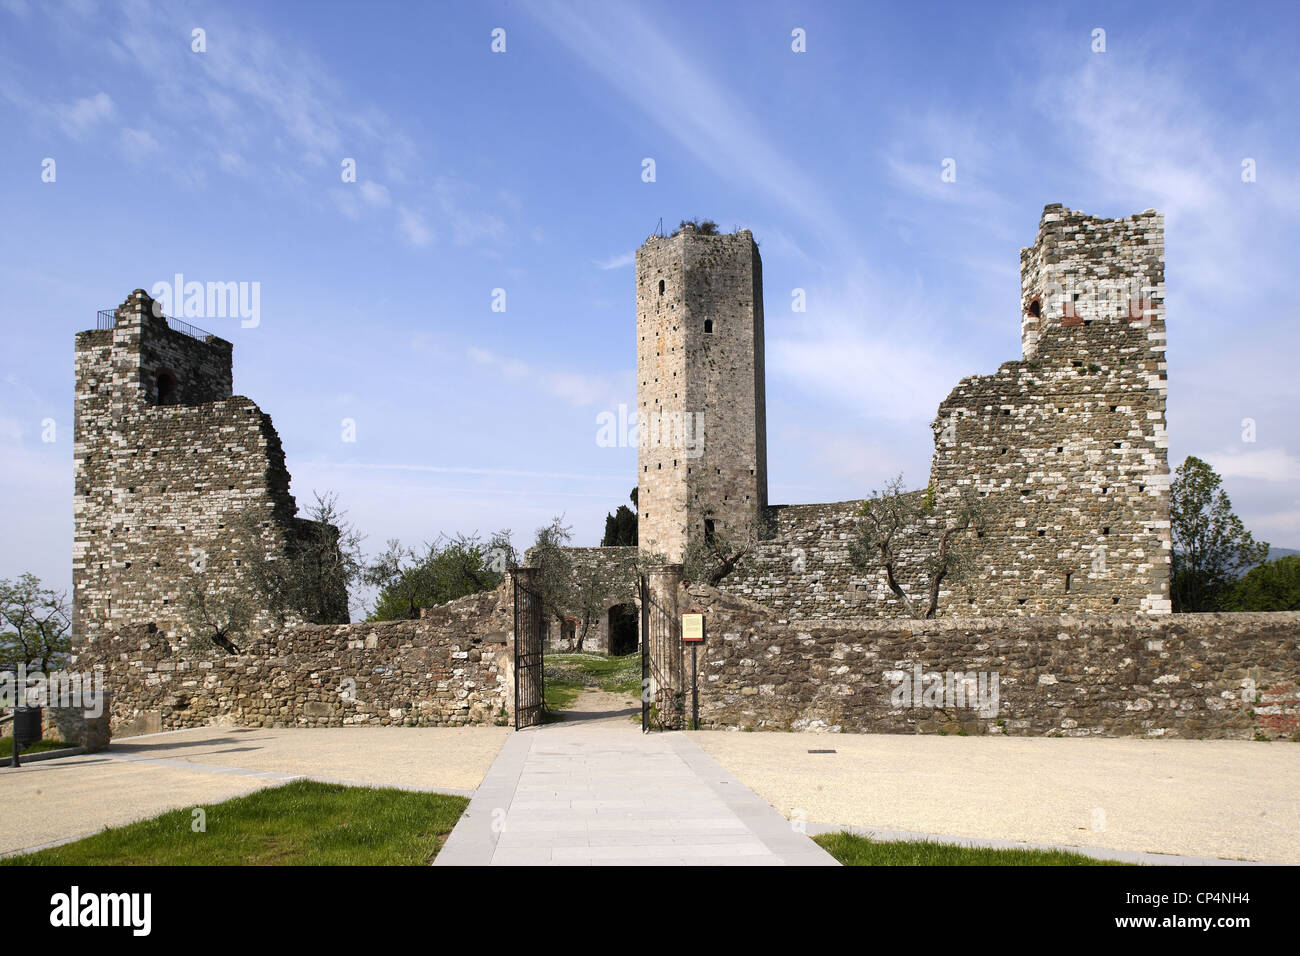 La nuova fortezza con la torre esagonale, XIV secolo. Serravalle Pistoiese, Provincia di Pistoia, Regione Toscana, Italia. Foto Stock